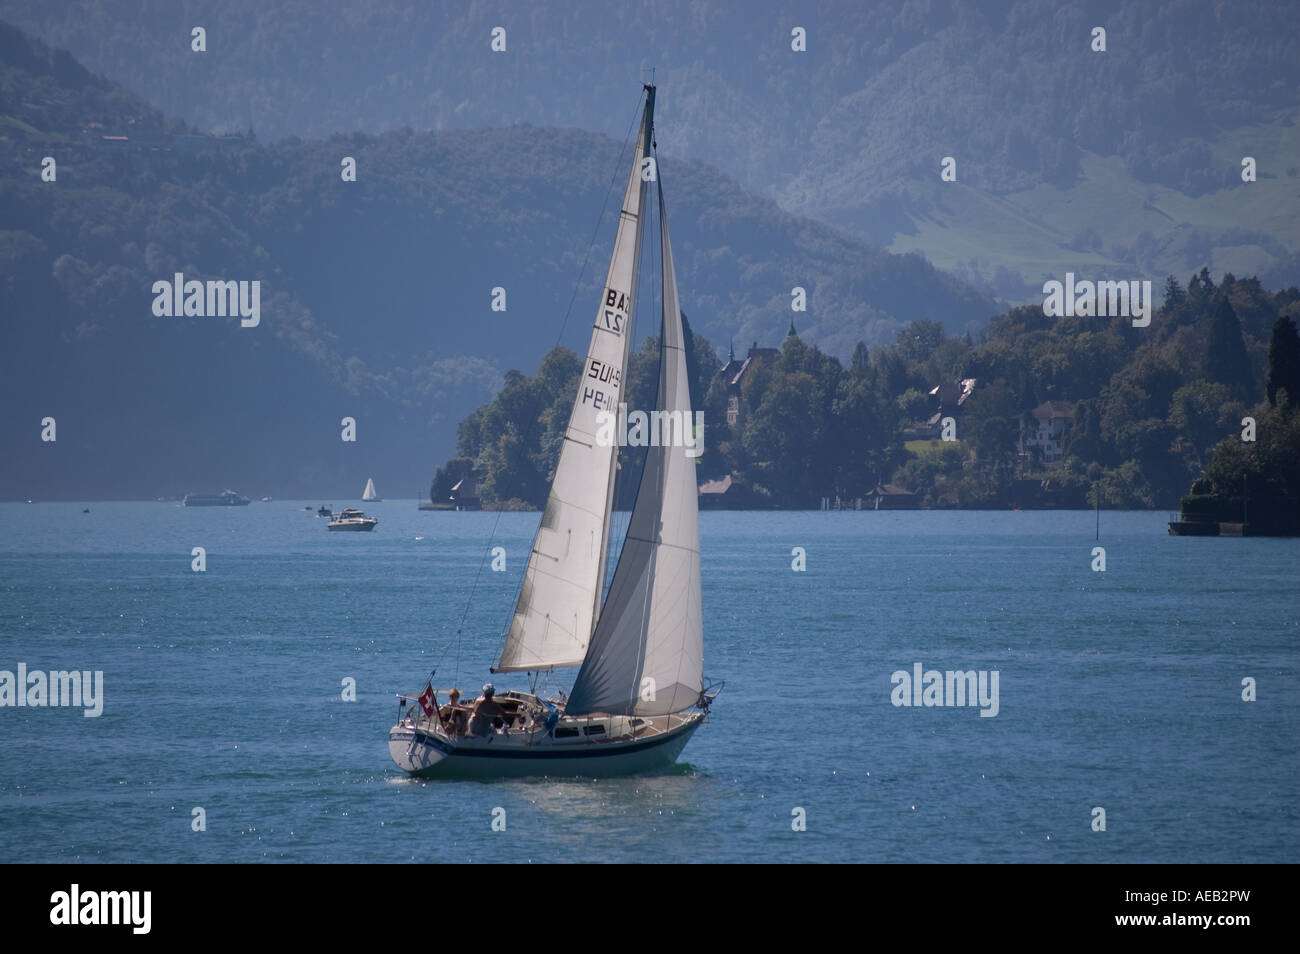 Boat on Lake Lucerne (Luzern) Switzerland. Stock Photo